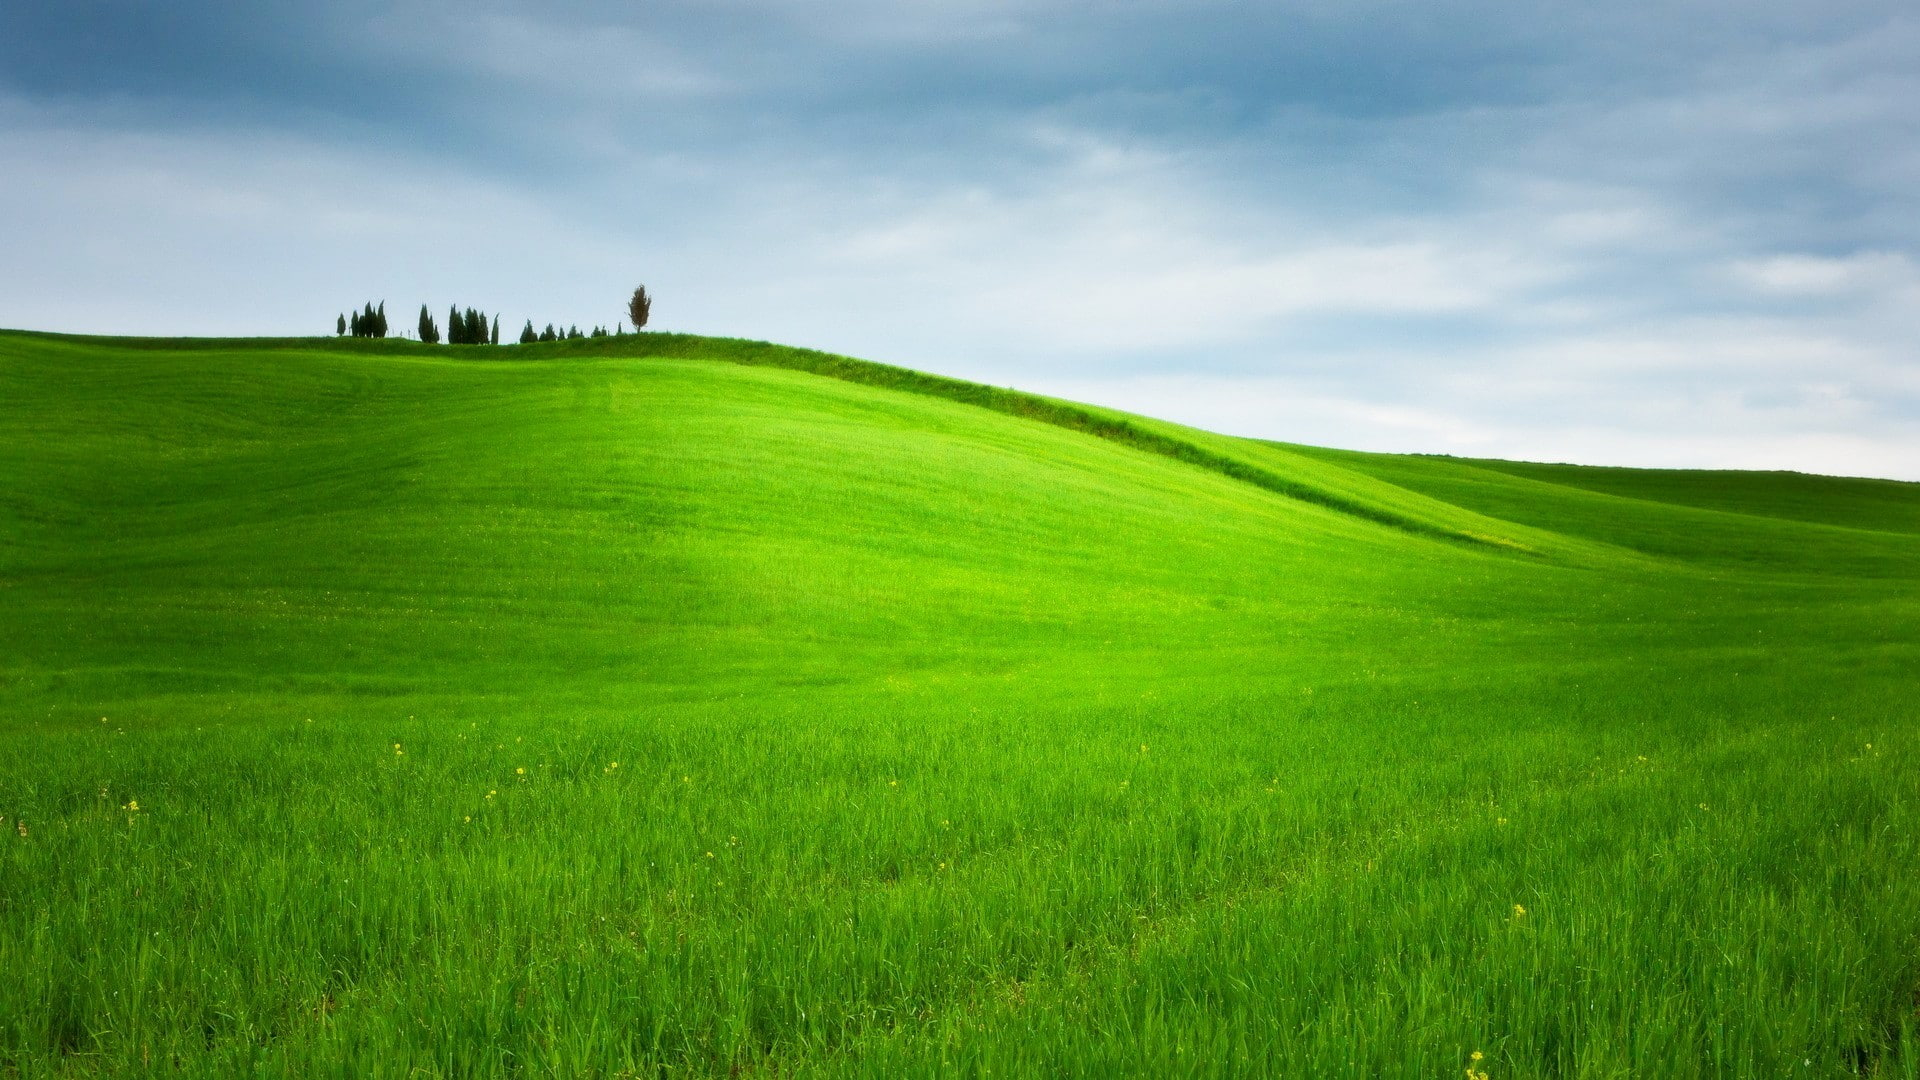 Hill wallpaper, Grass, Trees, Landscape, Nature, Field, Green